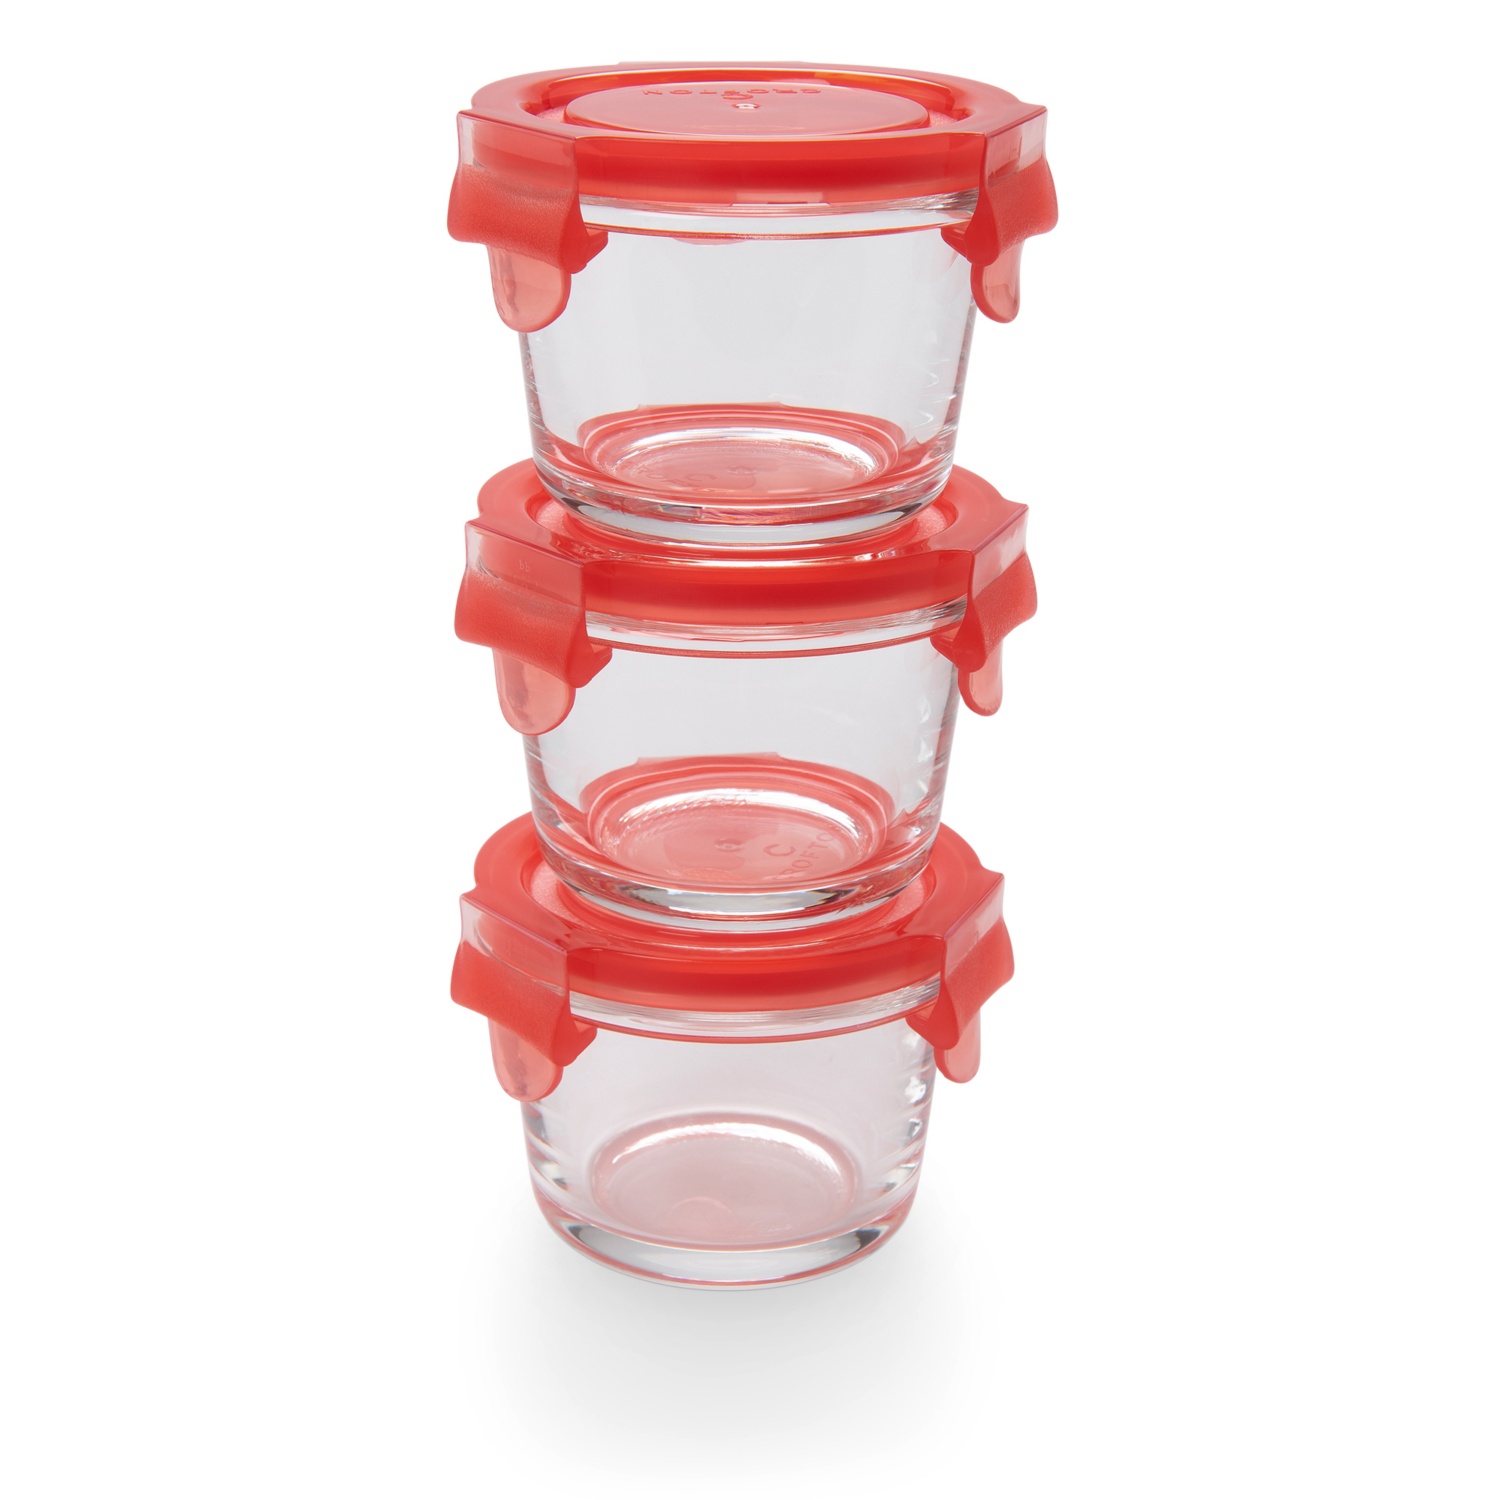 CROFTON Glas-Minidosen, 3-teilig, rund, Rot